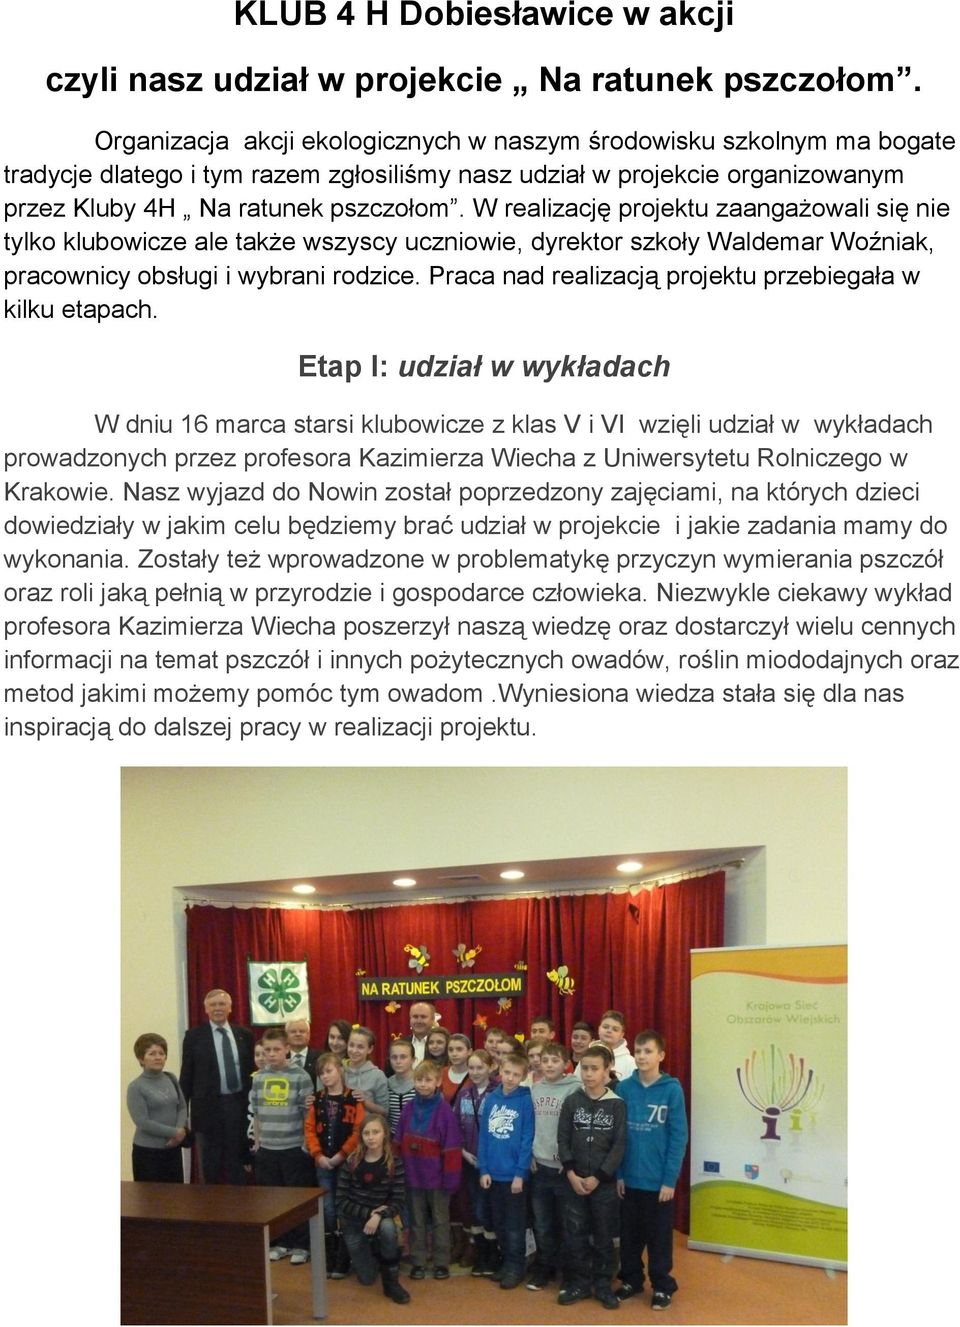 W realizację projektu zaangażowali się nie tylko klubowicze ale także wszyscy uczniowie, dyrektor szkoły Waldemar Woźniak, pracownicy obsługi i wybrani rodzice.